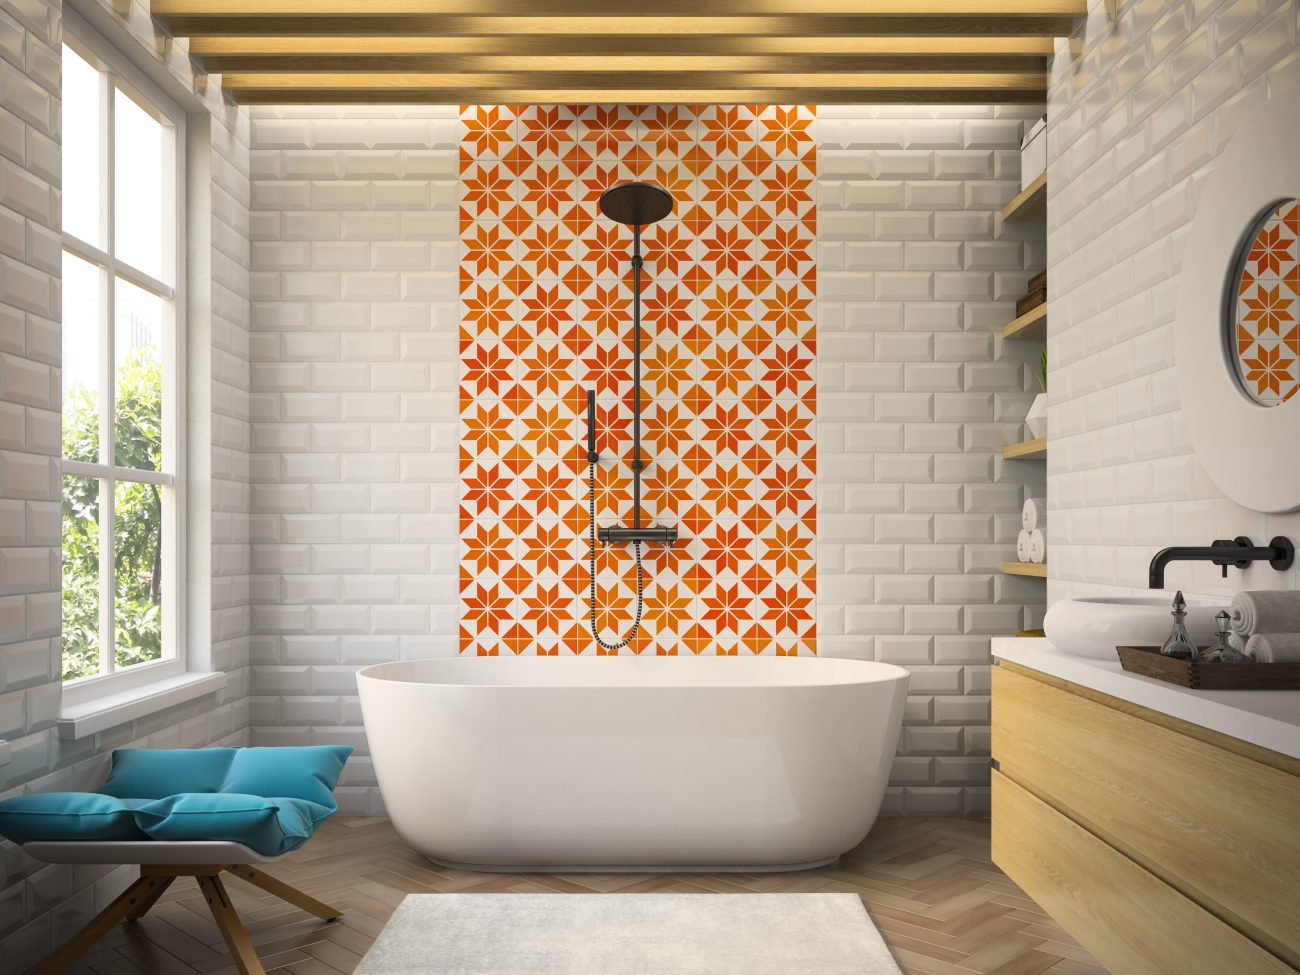 Salle de bain en briques blanches, partie d’un mur en tuiles orange et blanches à motifs étoilés, baignoire ovale, douche à pommeau noir et tabouret bas avec coussin bleu